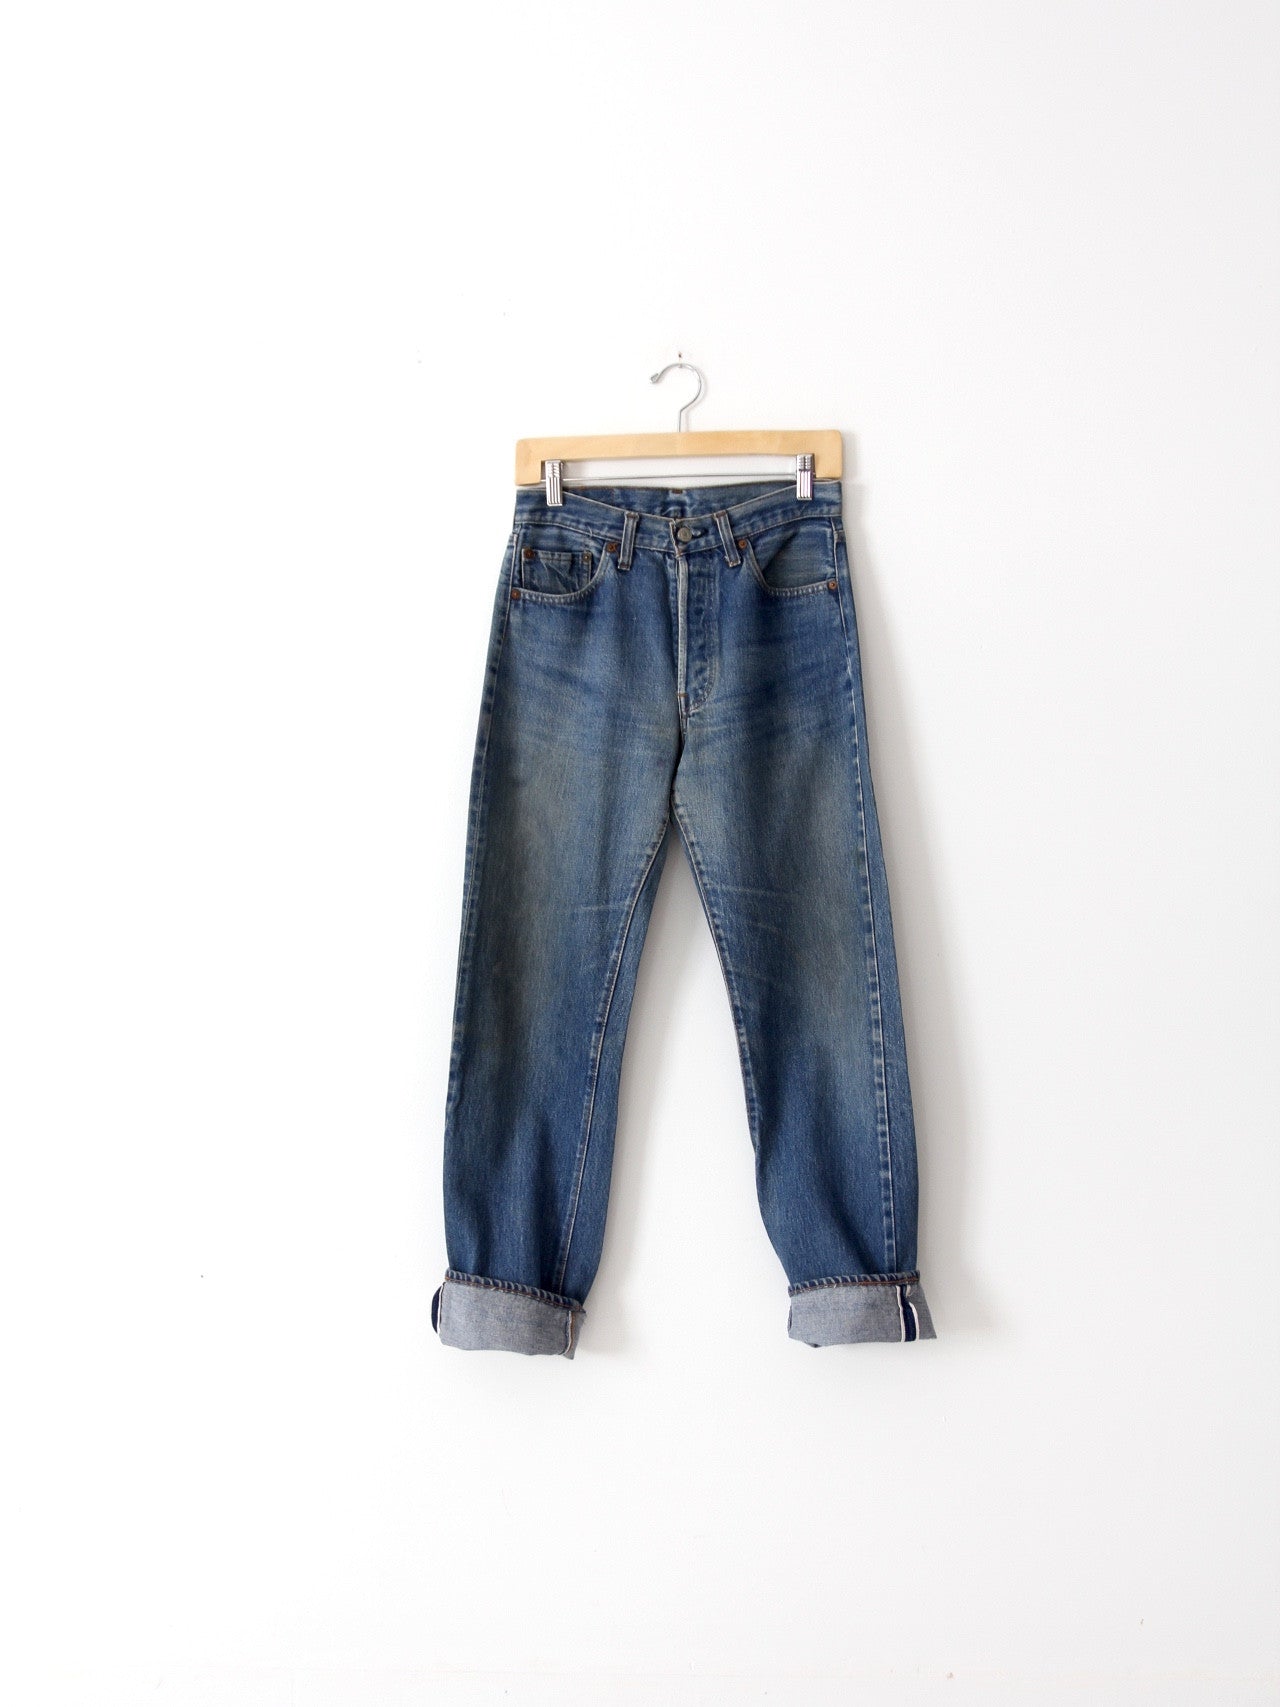 vintage Levis red line selvedge denim jeans, 29 x 31 – 86 Vintage